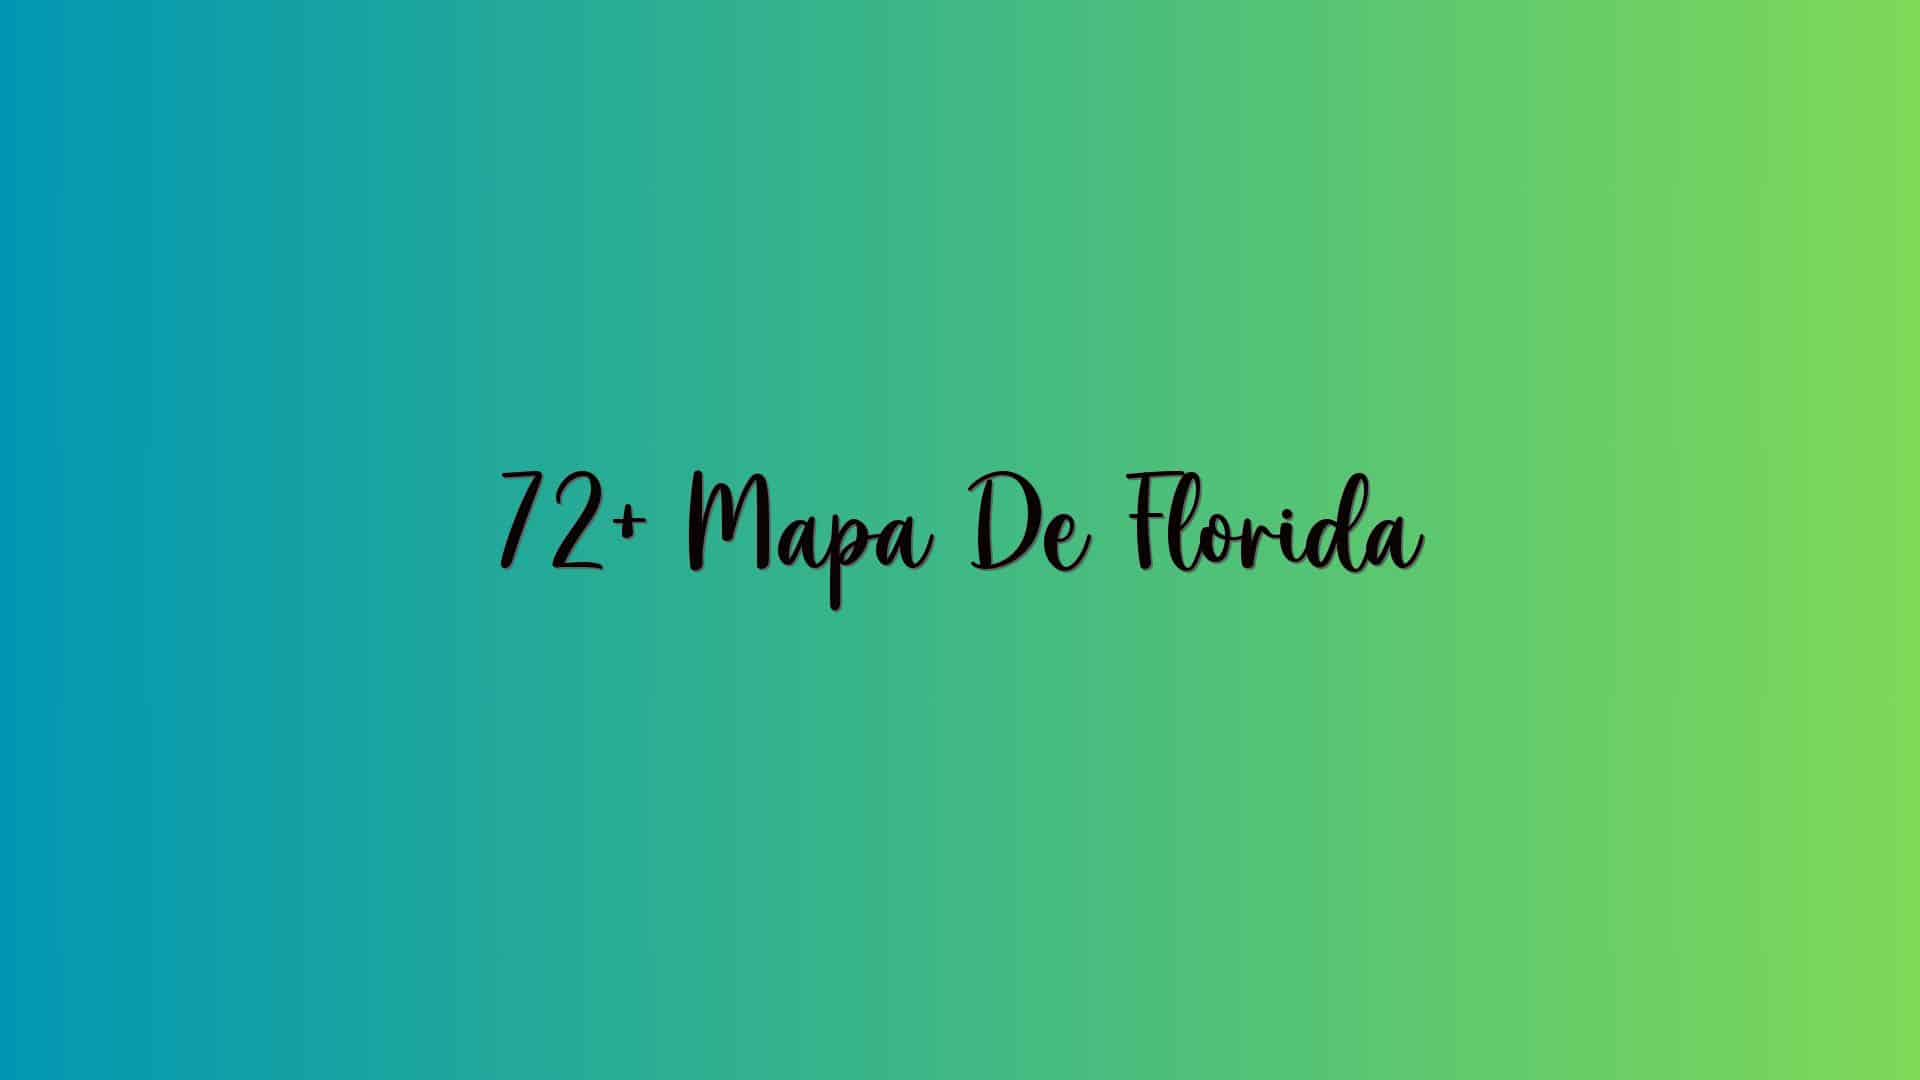 72+ Mapa De Florida